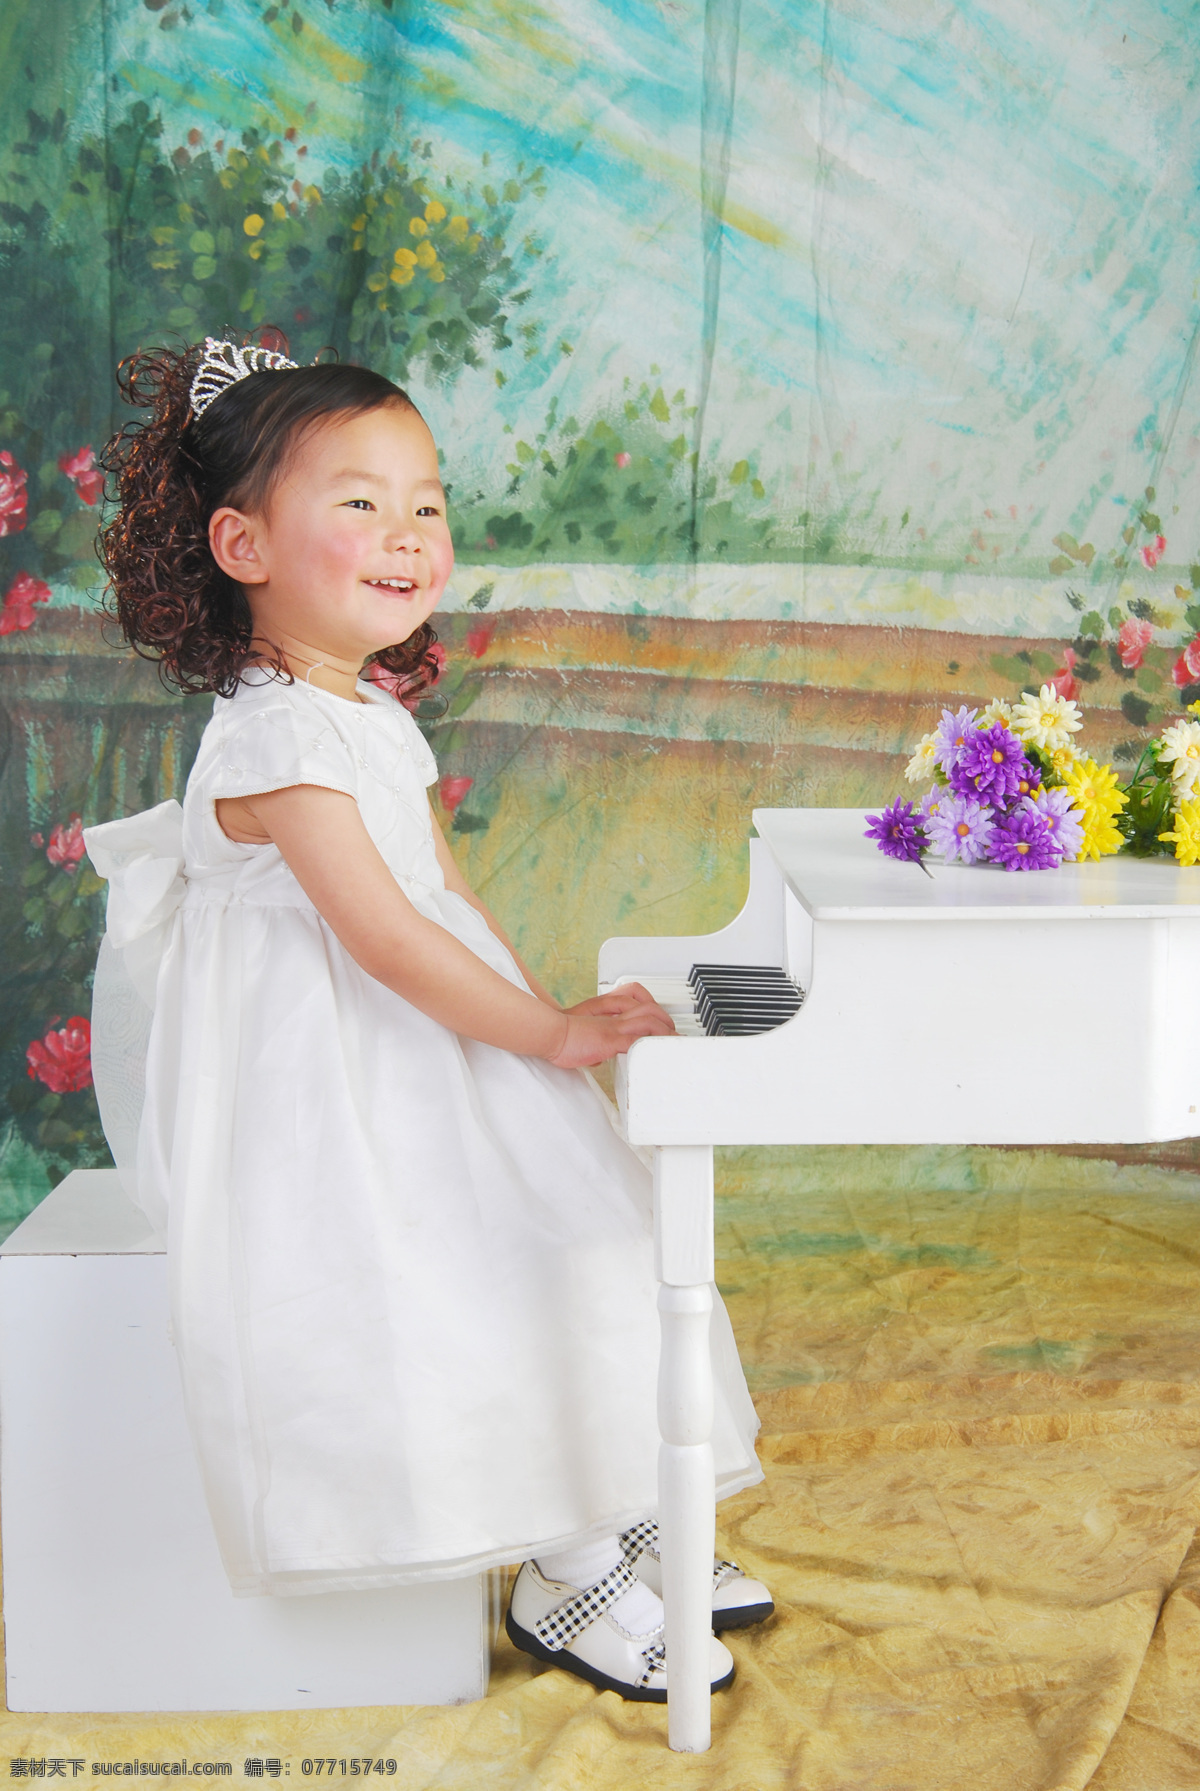 钢琴 小 公主 儿童幼儿 开心 人物图库 阳光 音乐 钢琴小公主 弹 小女孩 psd源文件